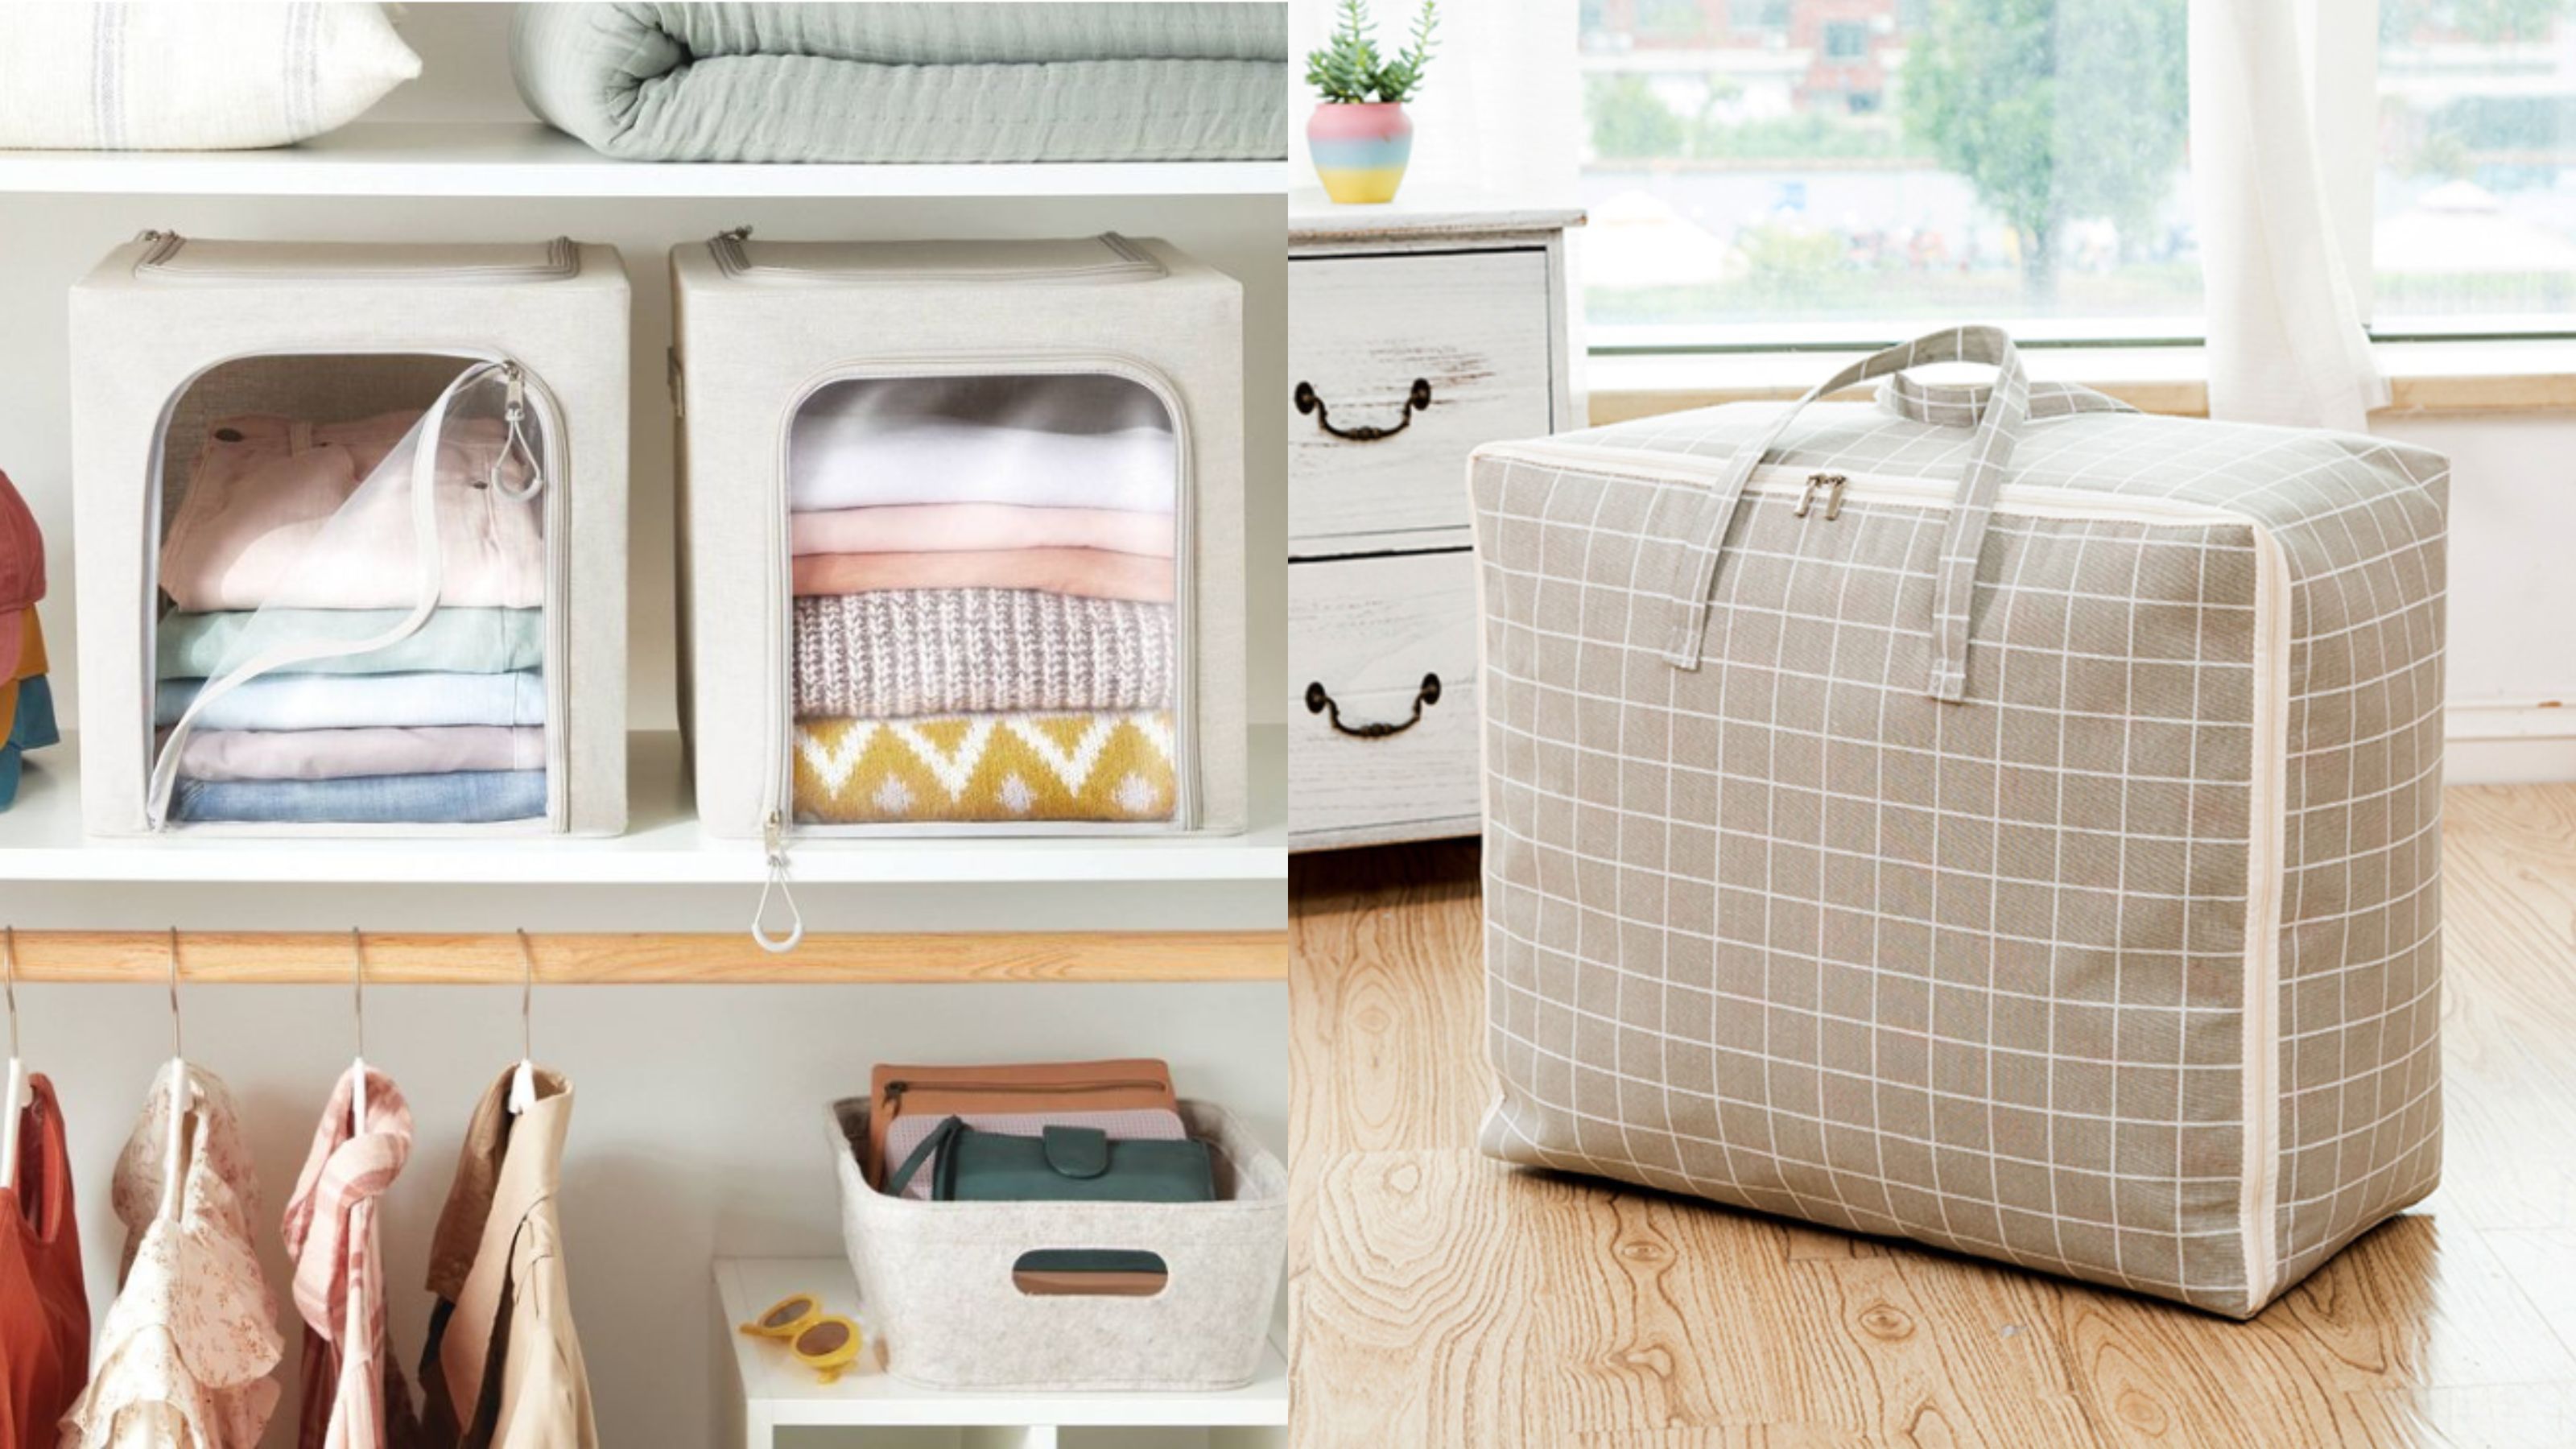 Bedding Storage Bags : Target